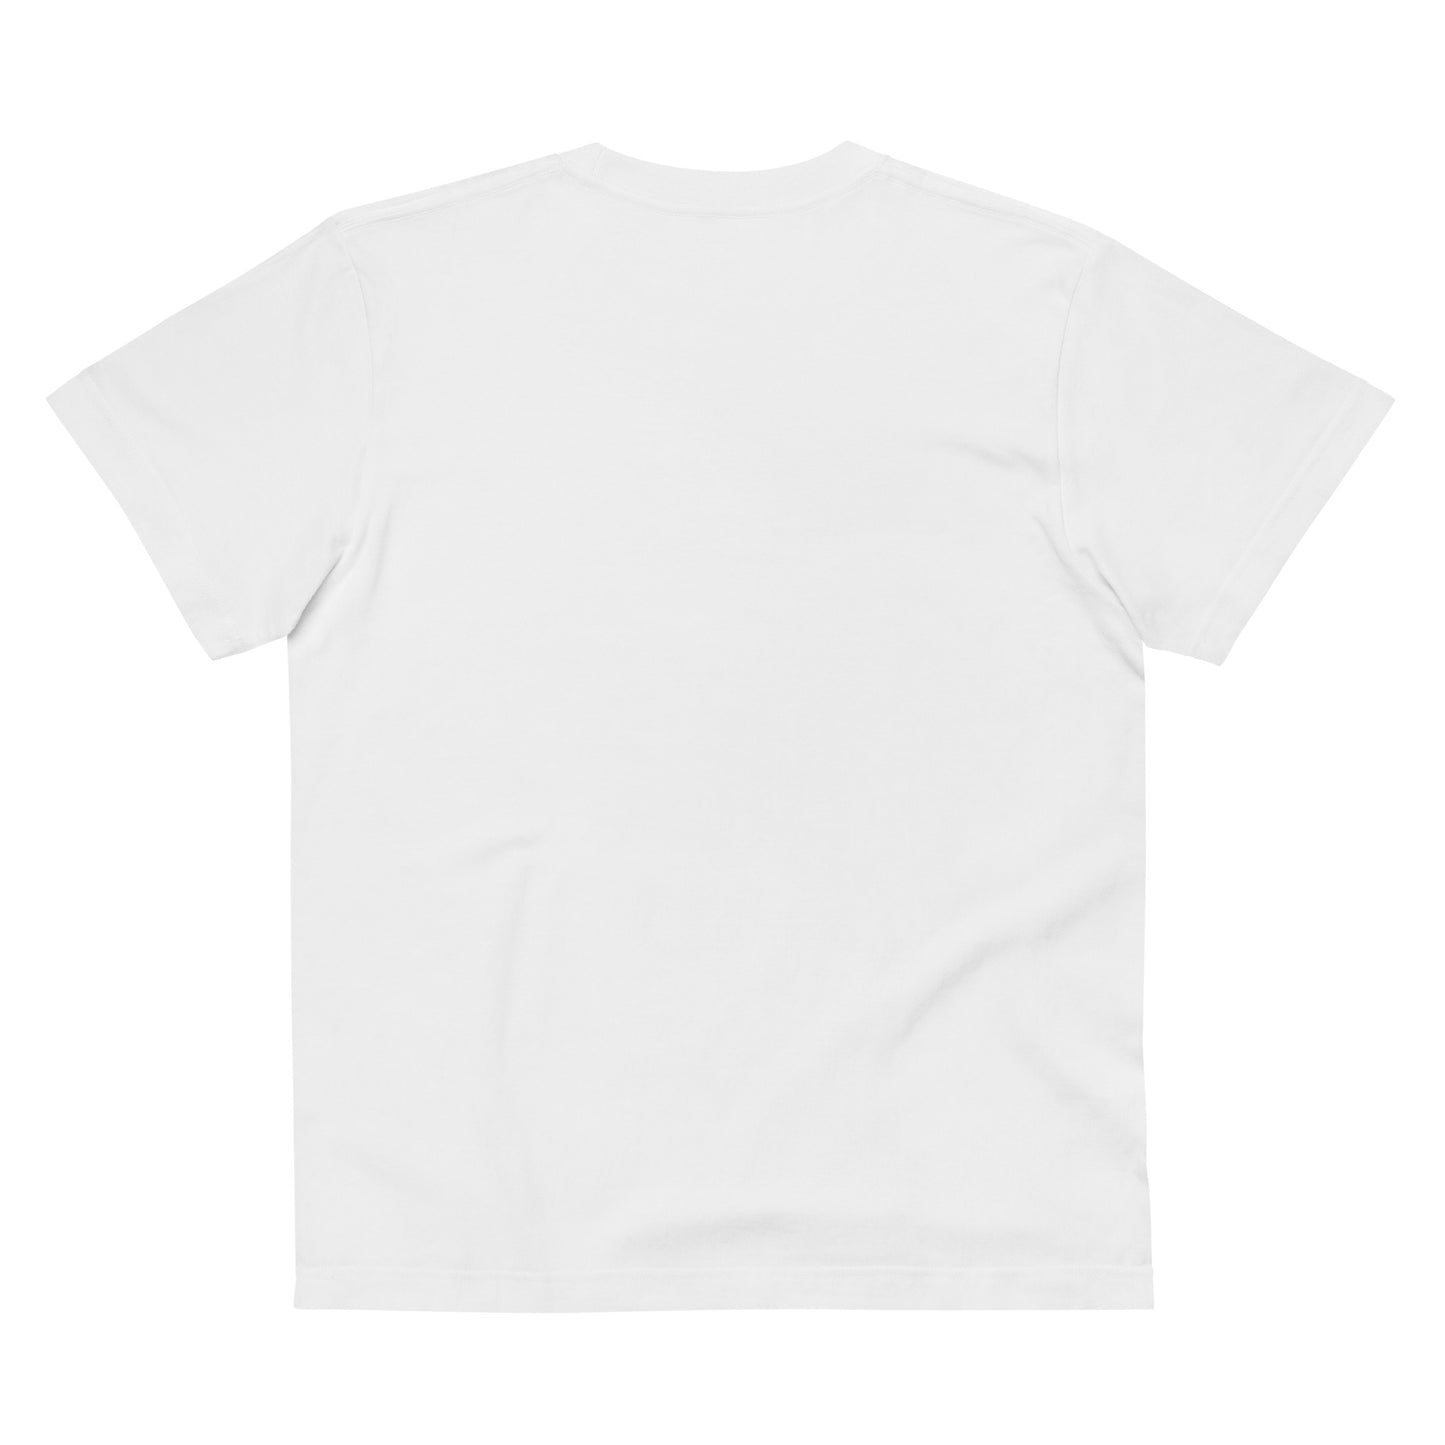 E036 - เสื้อยืด/รูปร่างมาตรฐาน (วิบากชนะ : สีขาว/สีดำ)